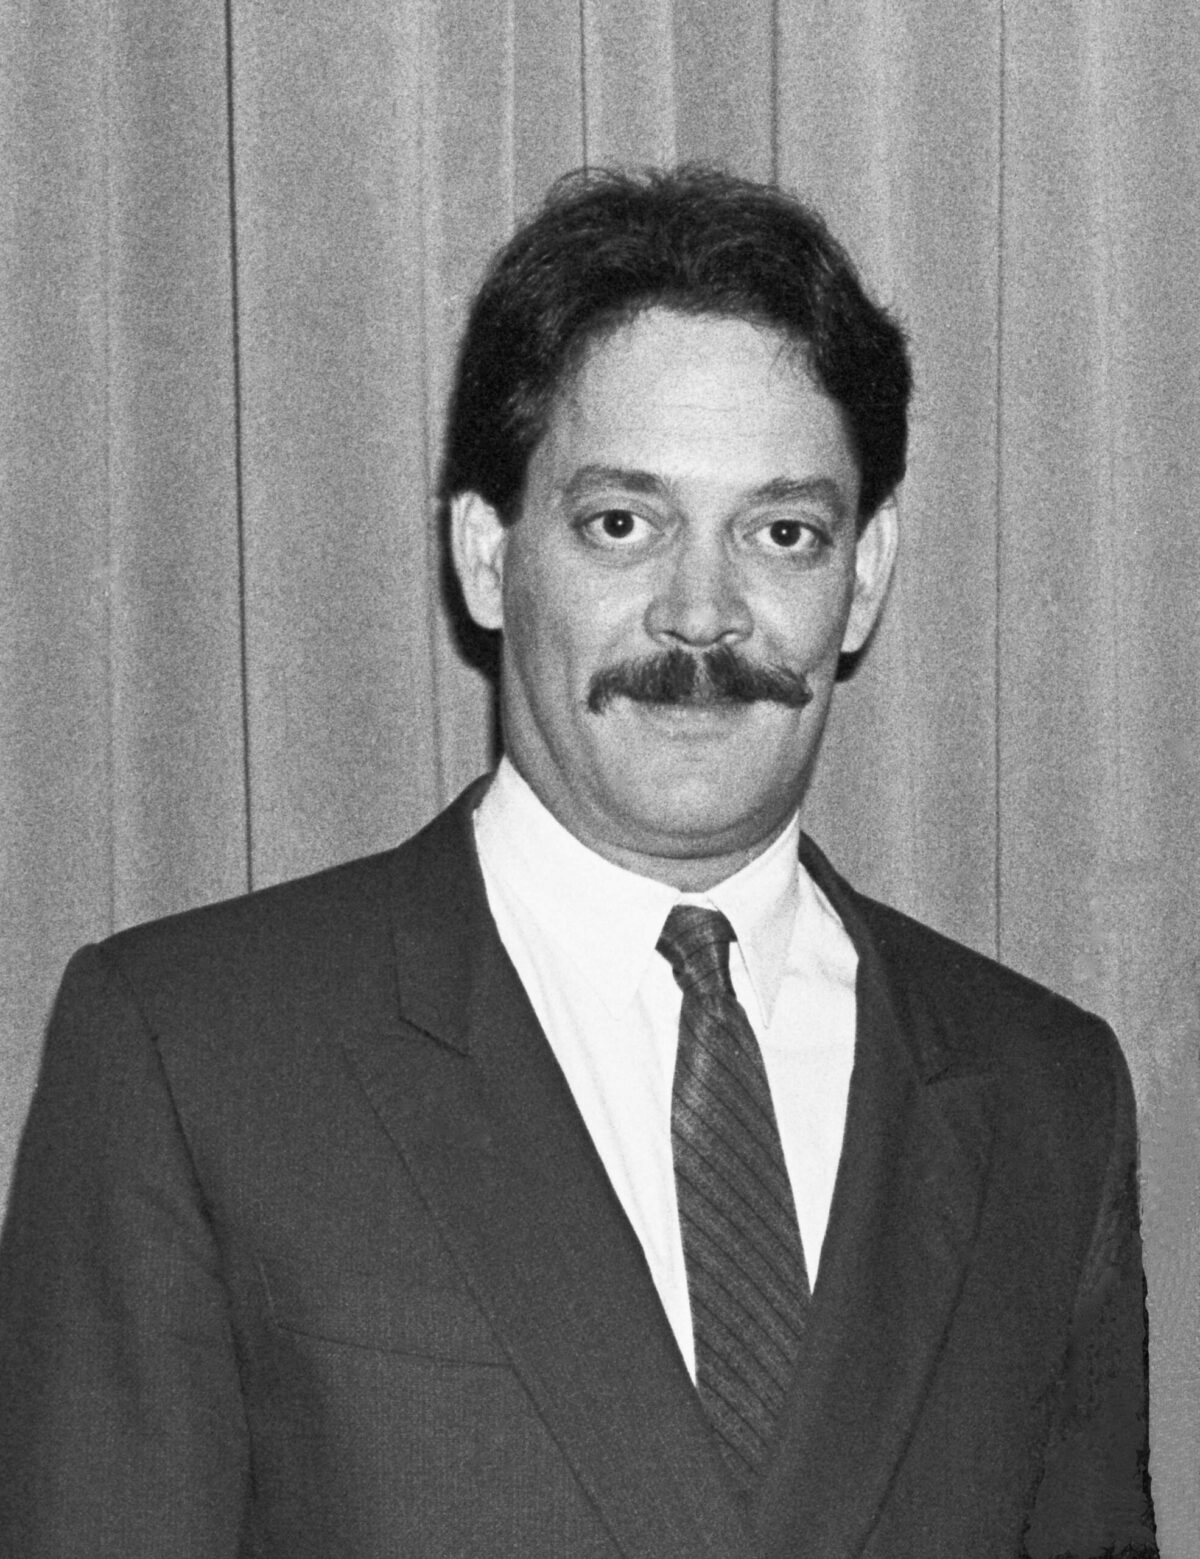 Raúl Juliá © HFPA 1985